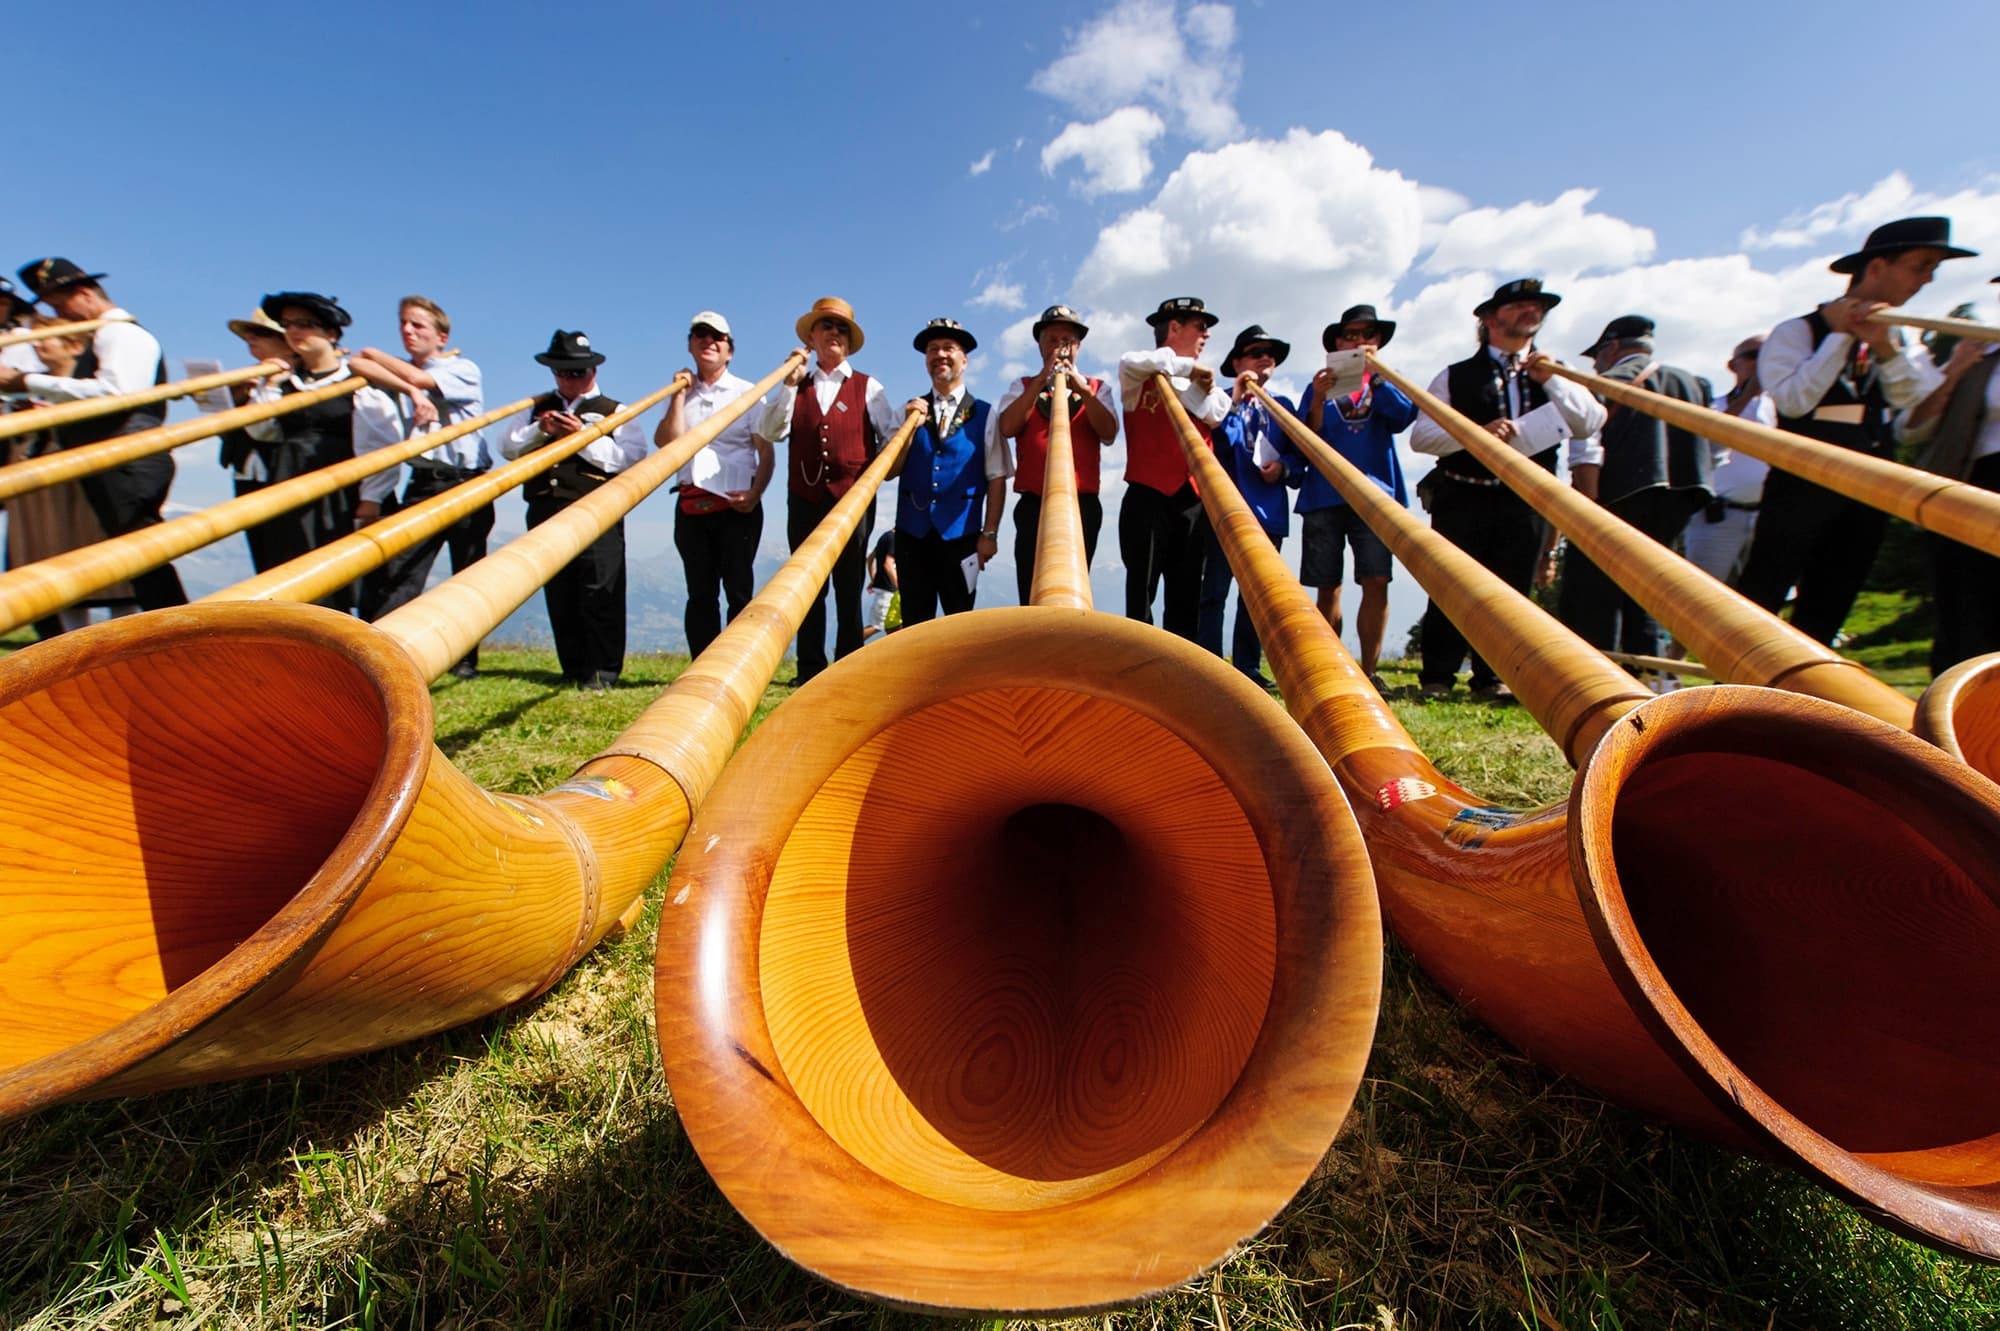 Alphorn: Mountain music, Alphorn players performing in Nendaz, Switzerland, The Alphorn Festival. 2000x1340 HD Wallpaper.